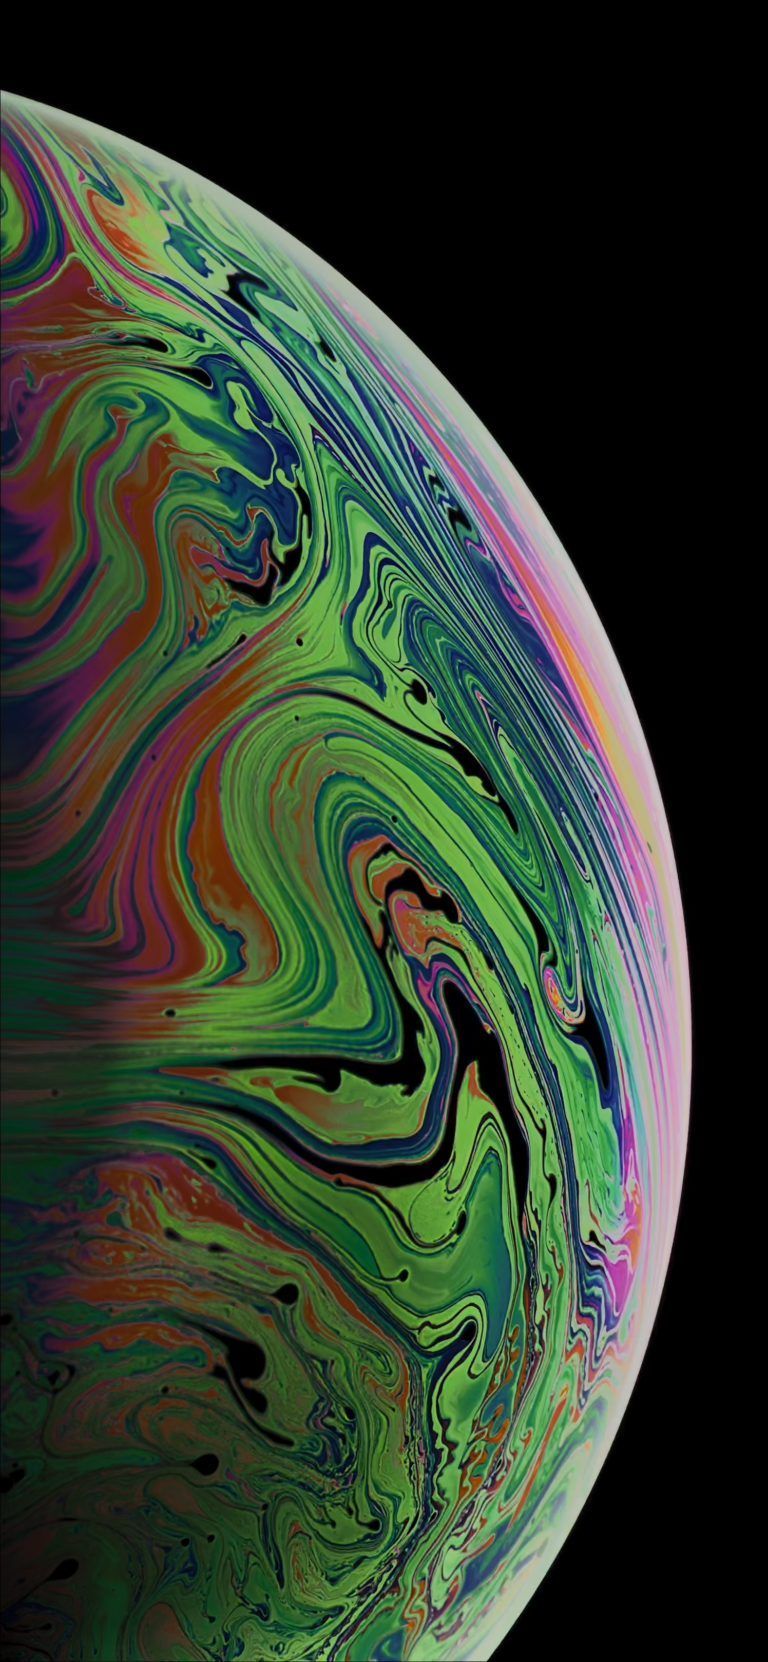 Download the 3 iPhone XS Max Wallpaper of Bubbles Görüntüler ile